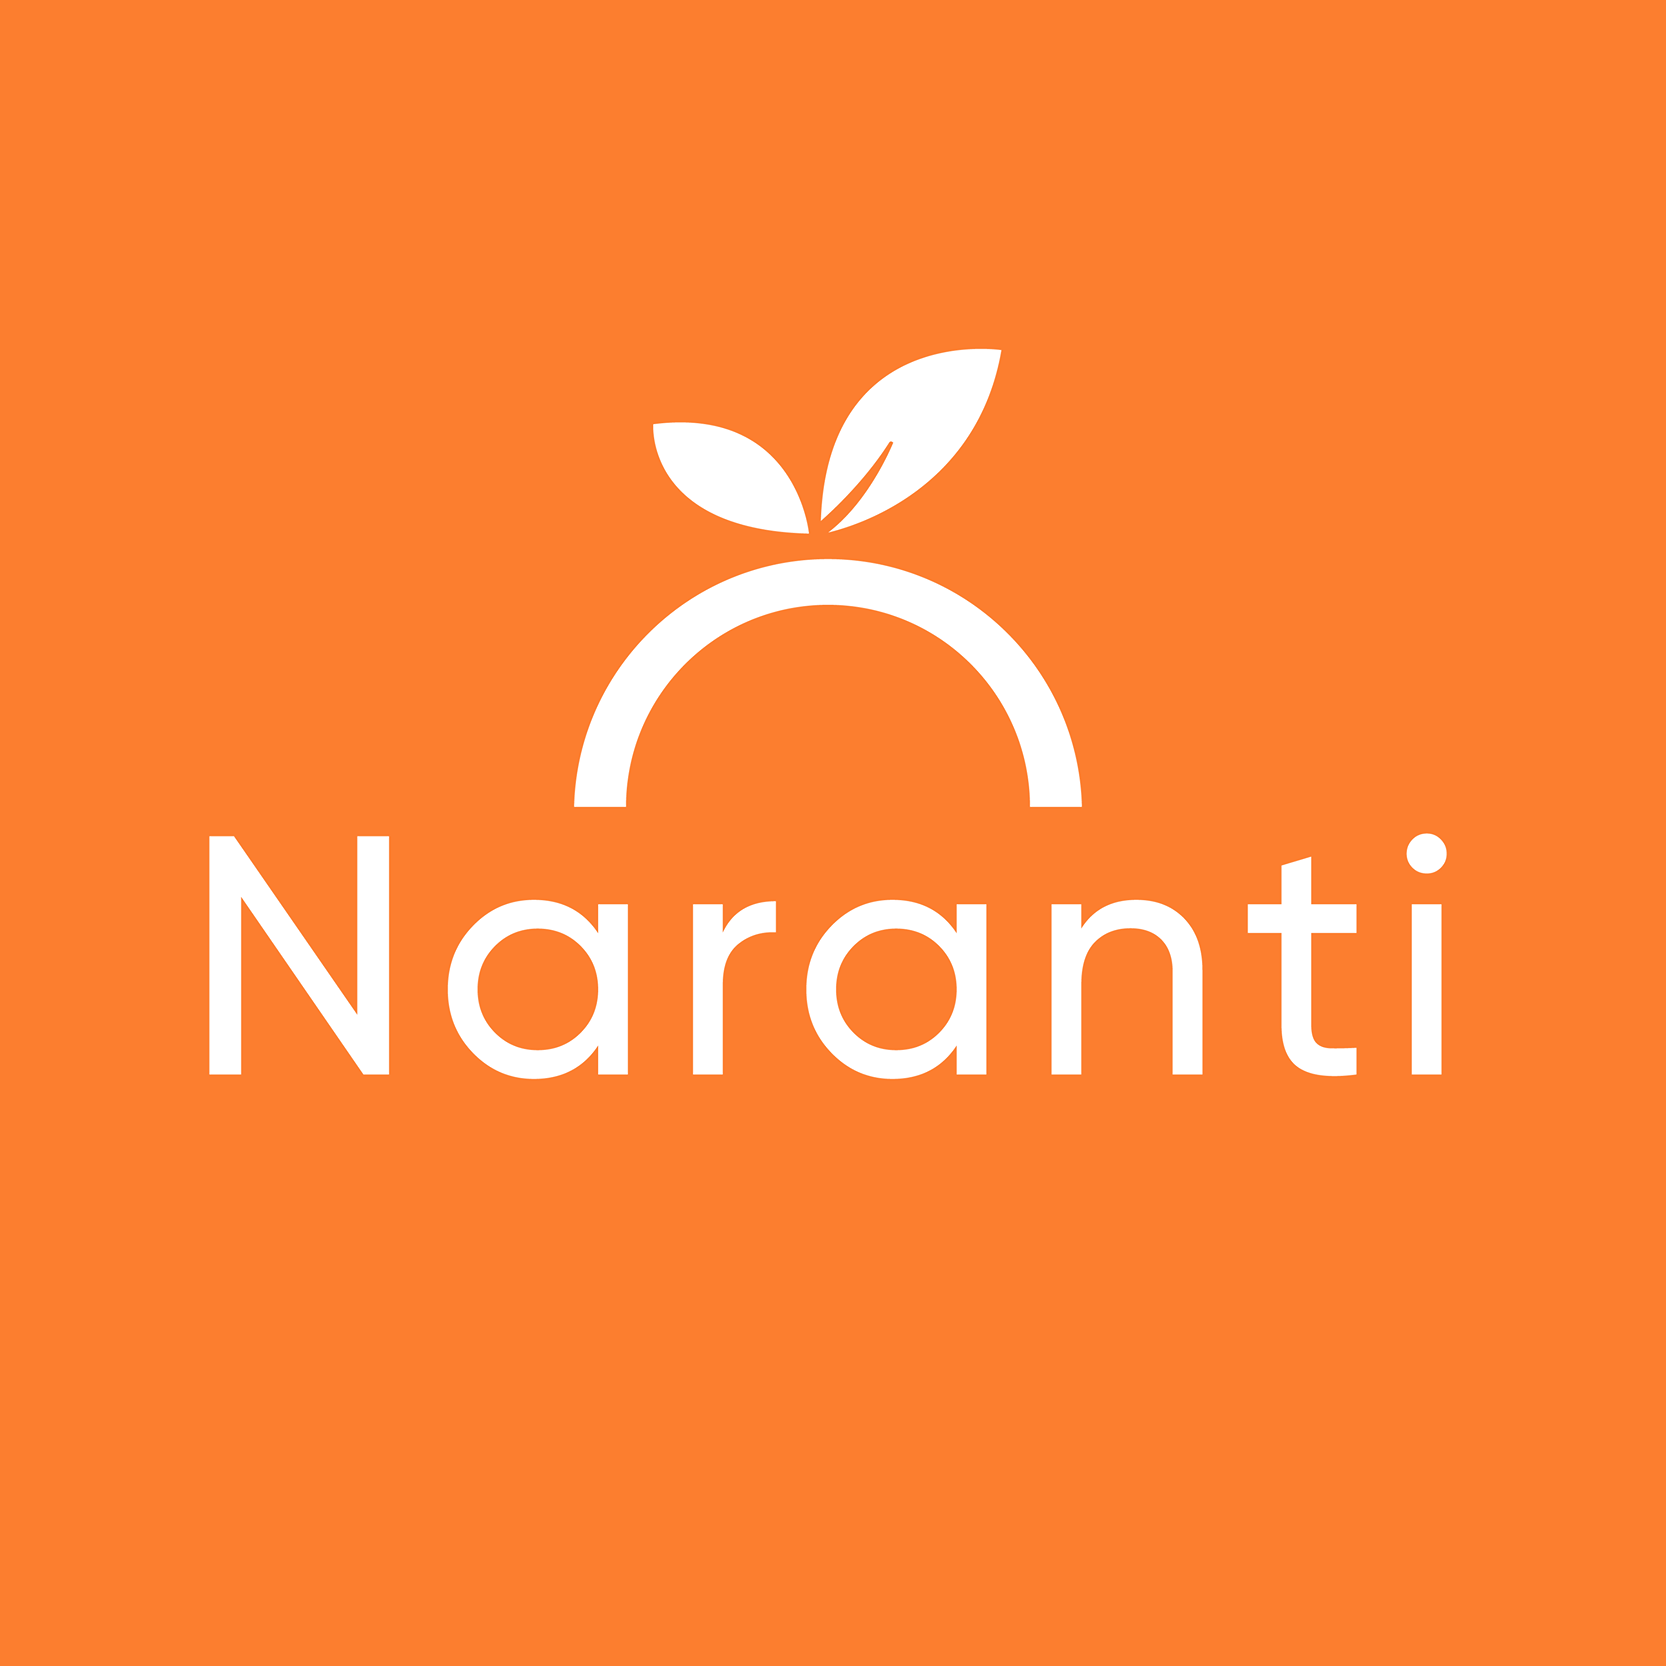 Naranti